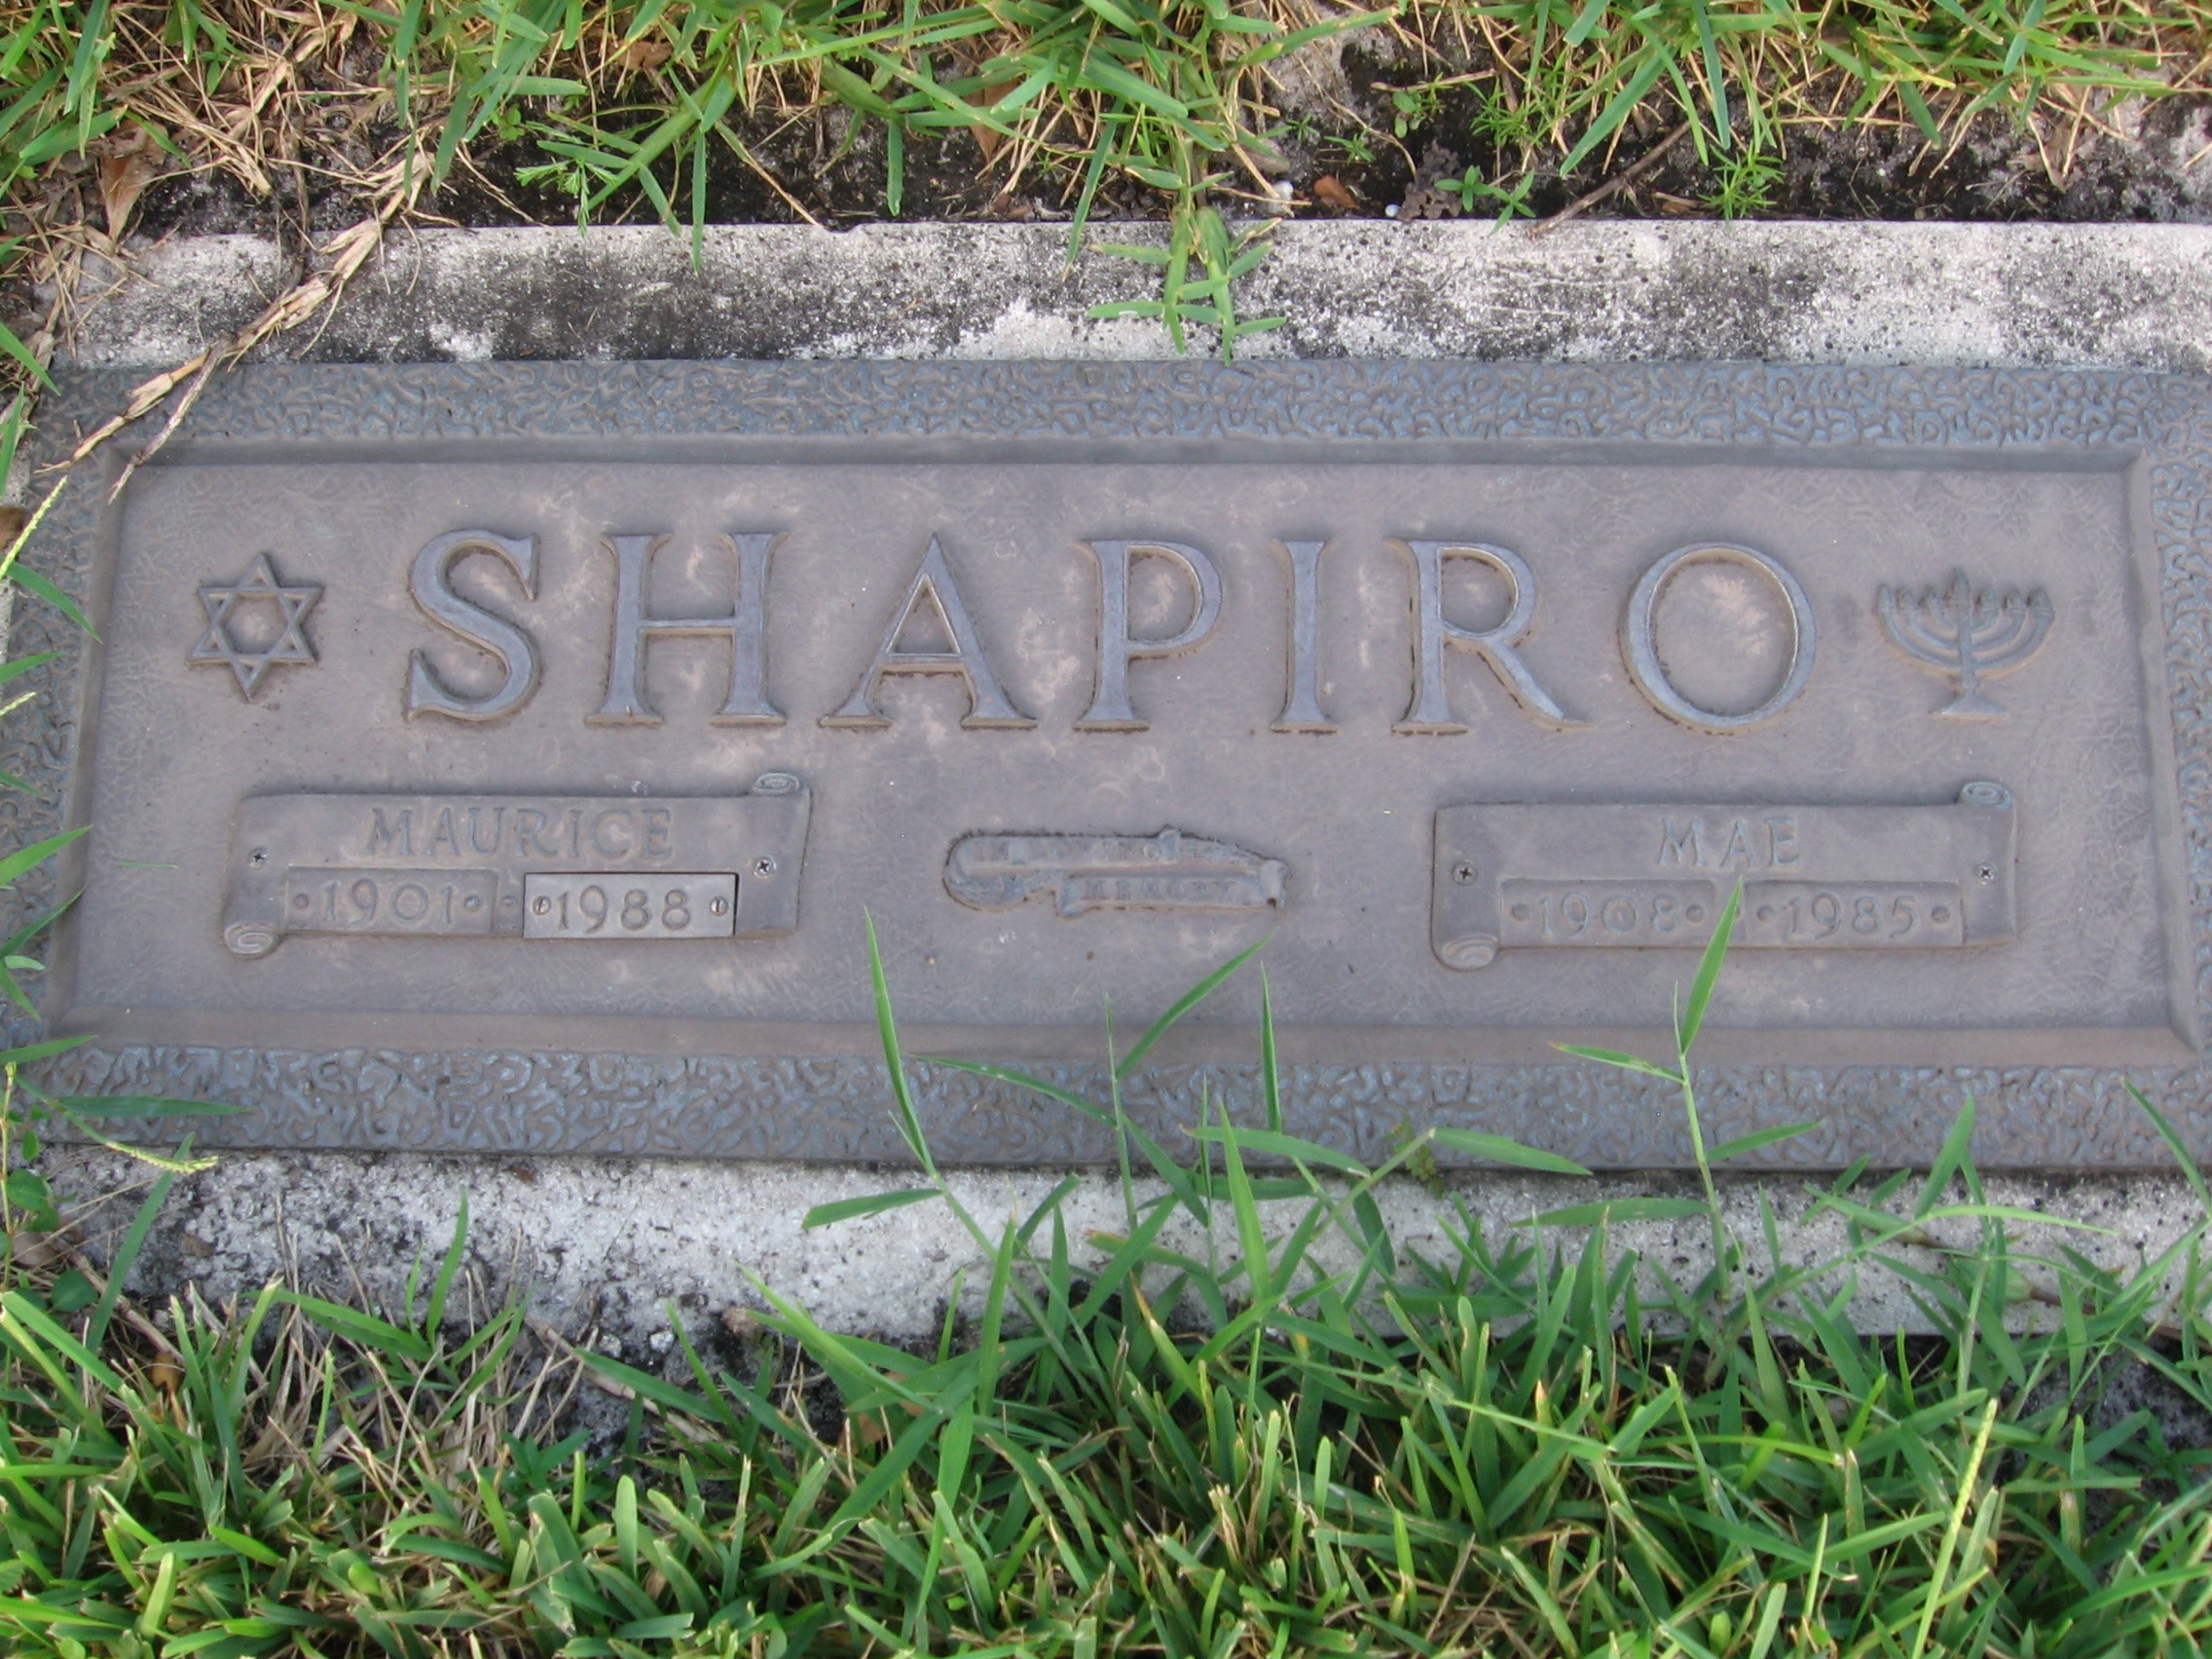 Maurice Shapiro